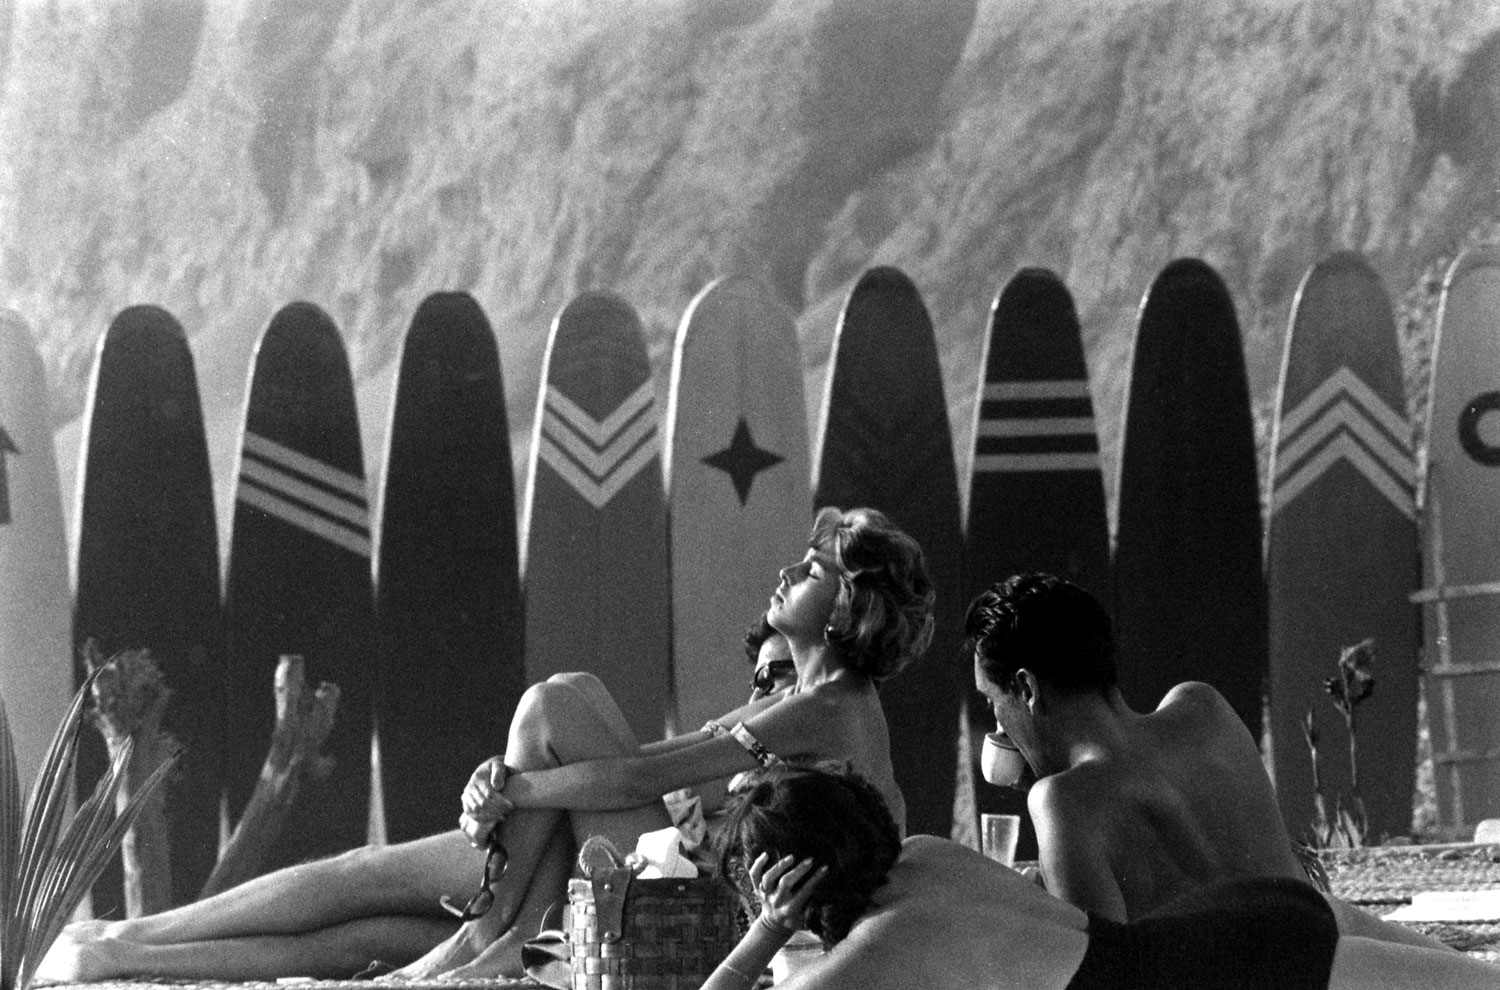 Surfing, Lima, Peru, 1959